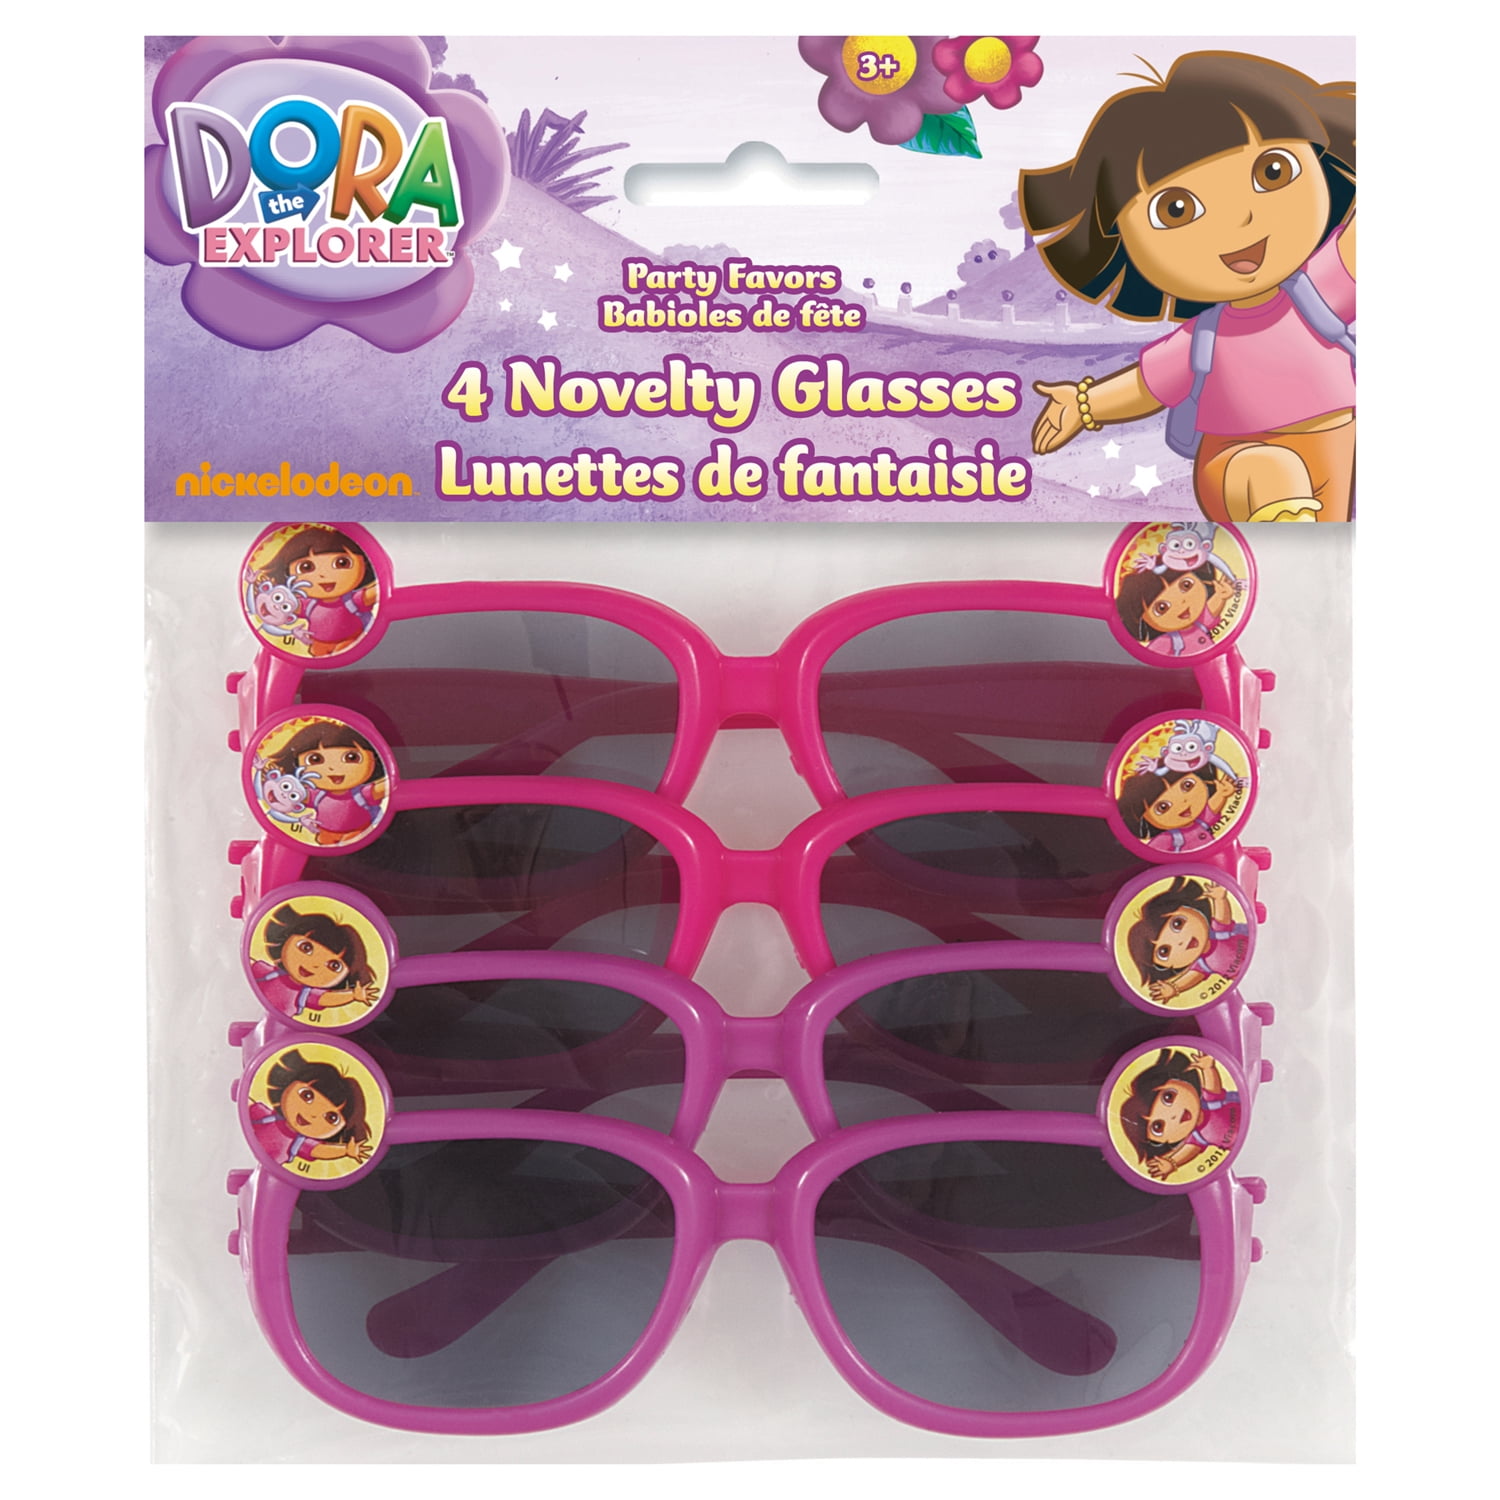 Dora the explorer glasses